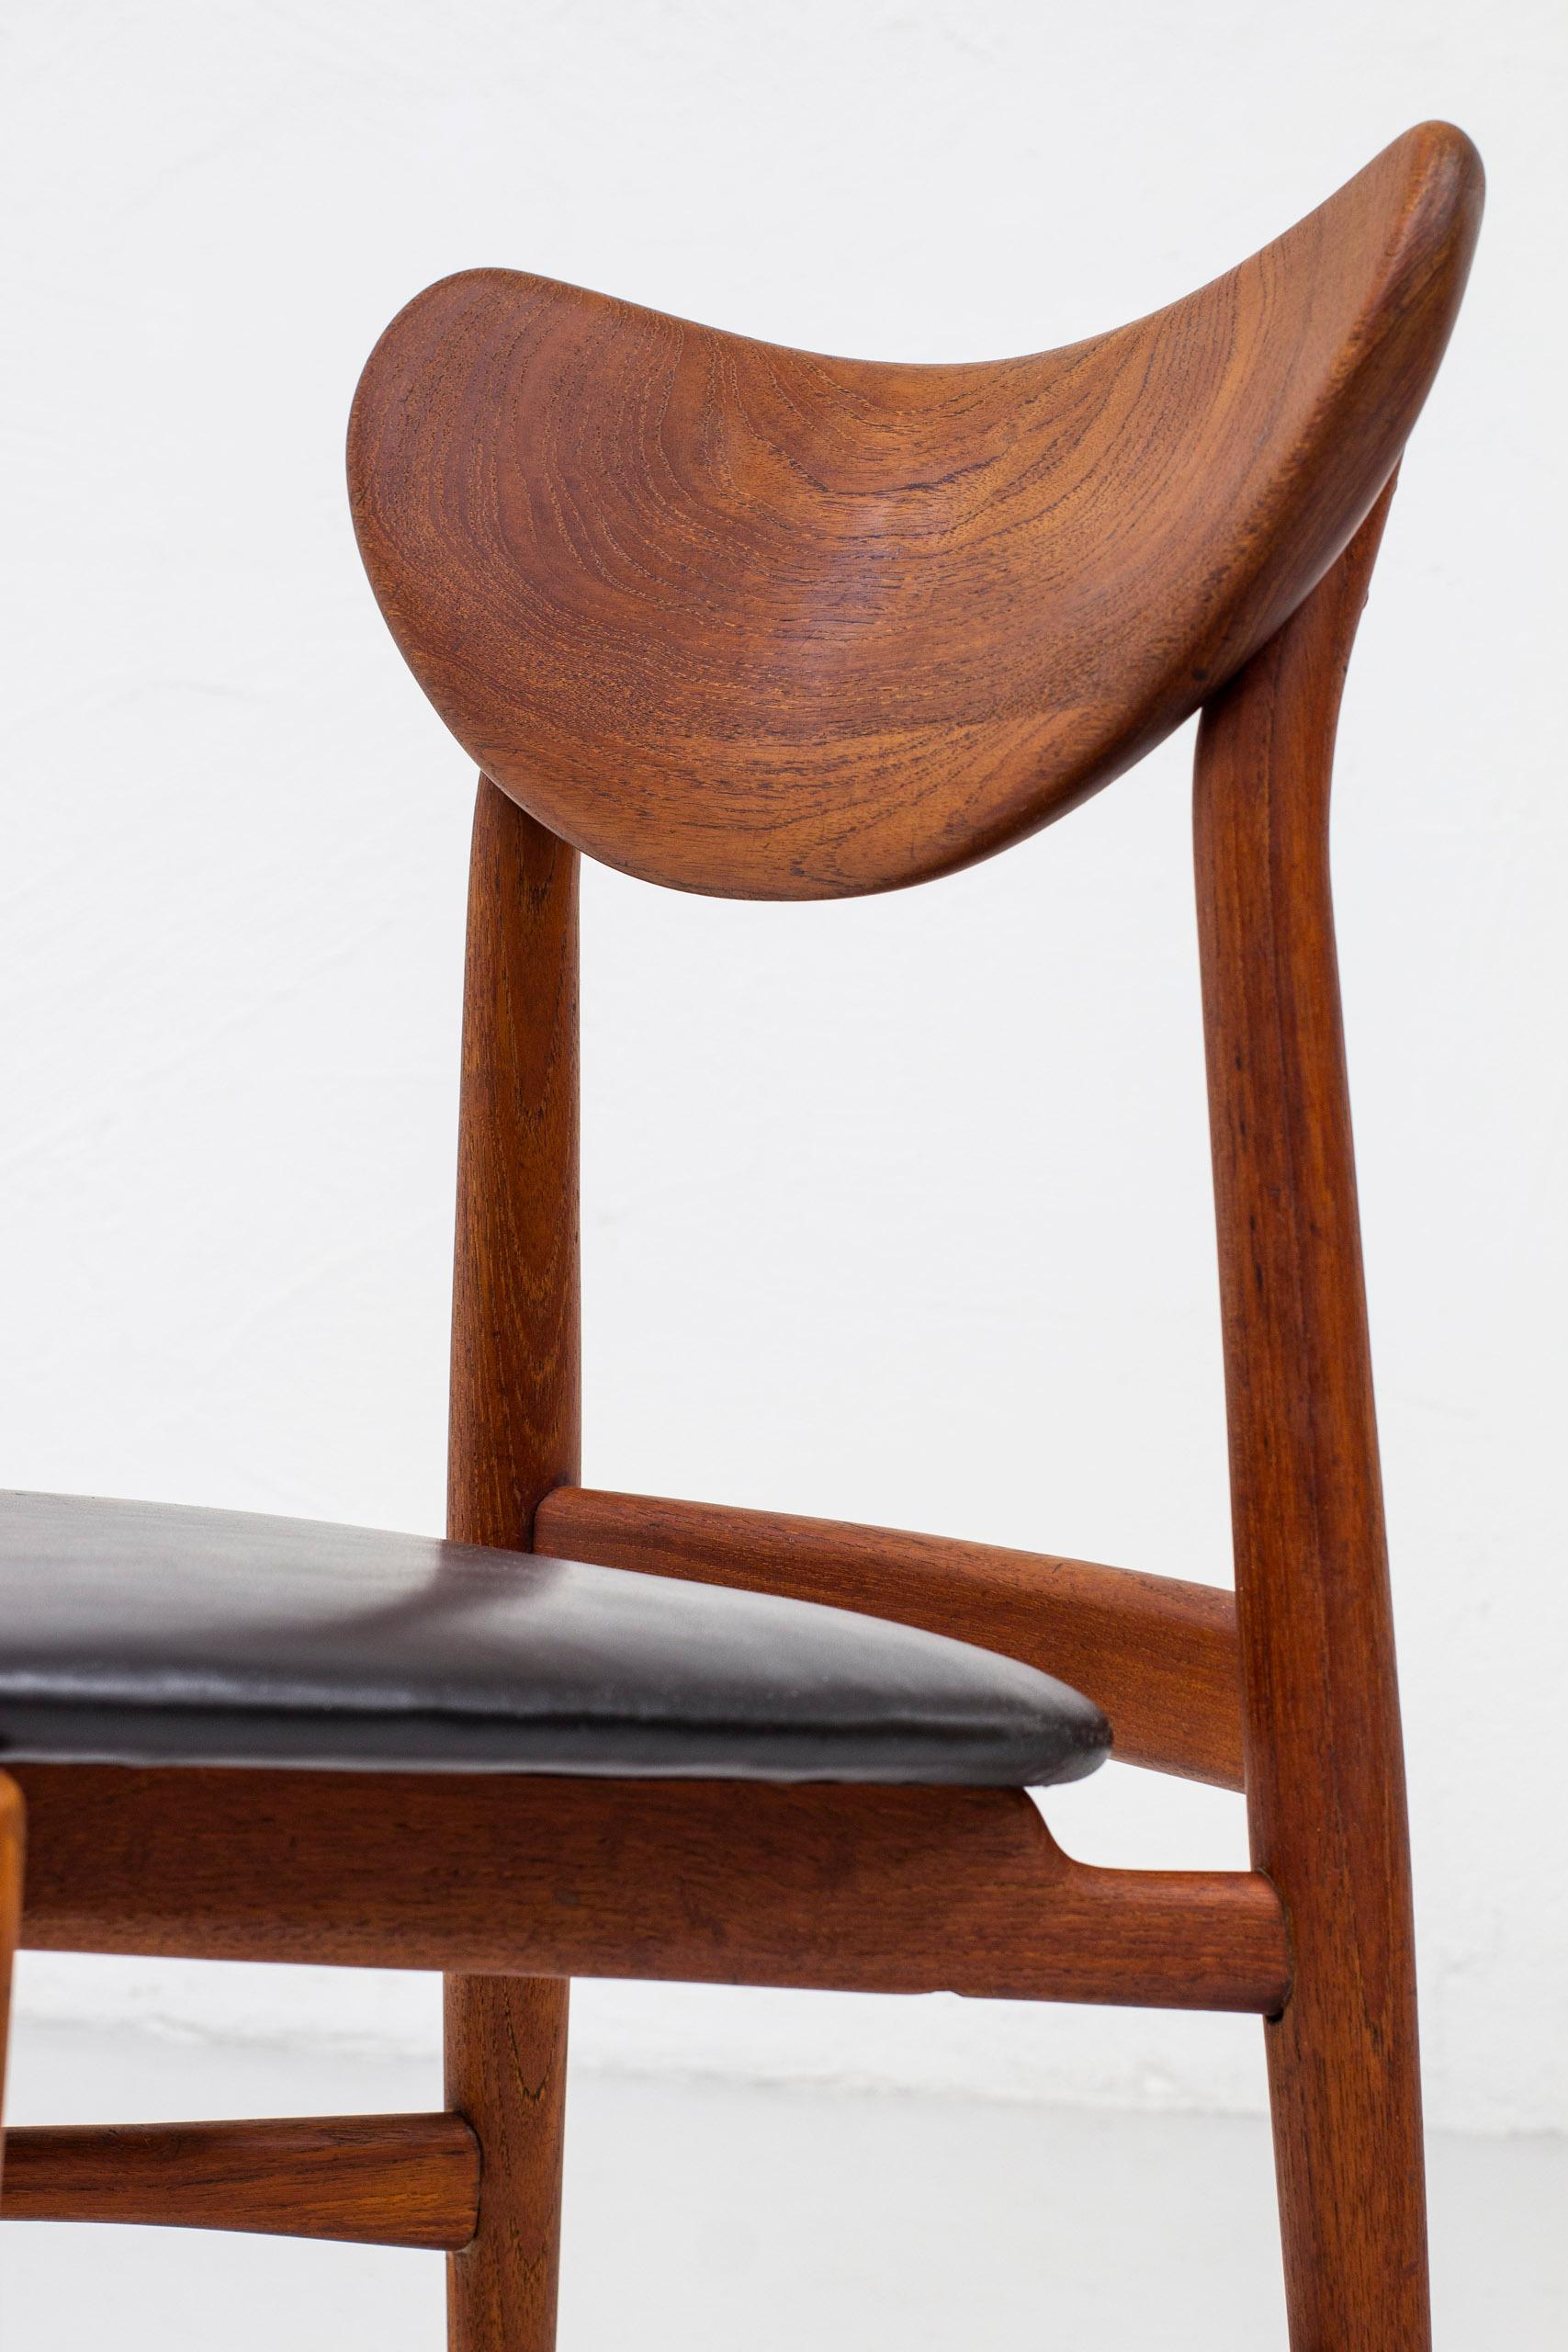 Brass Danish Modern Sculpted Side Chair in Teak by Cabinetmaker Oluf Jensen, 50s